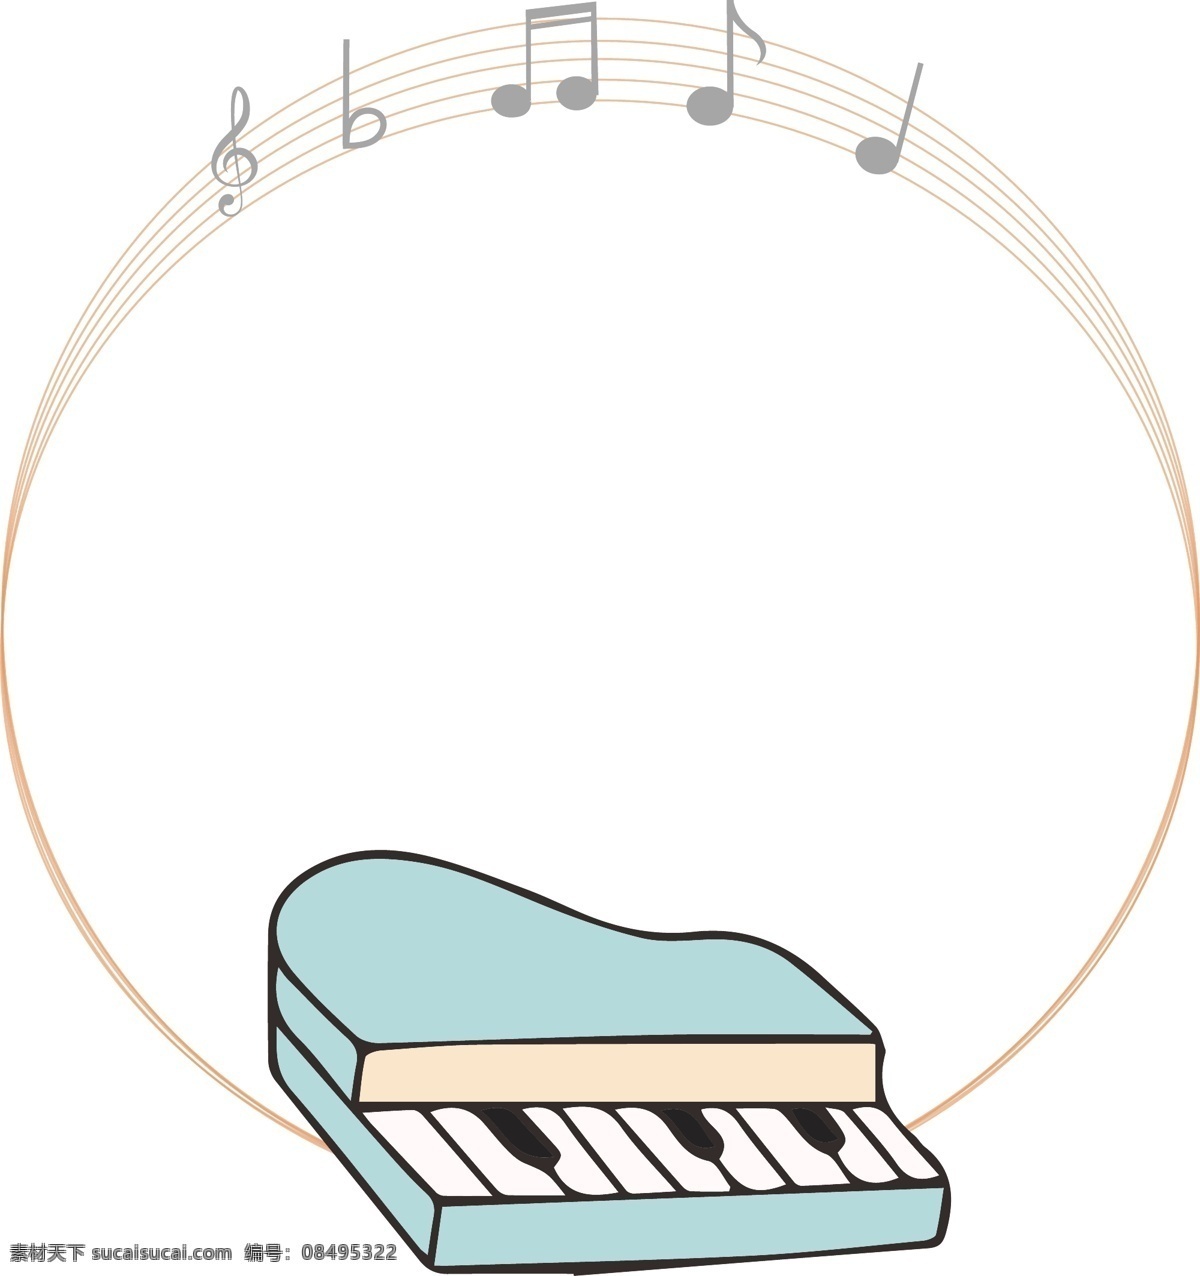 浅色 钢琴 音符 矢量 边框 玩具钢琴 儿童玩具 电子琴 可爱音符 简约边框 音乐 乐章